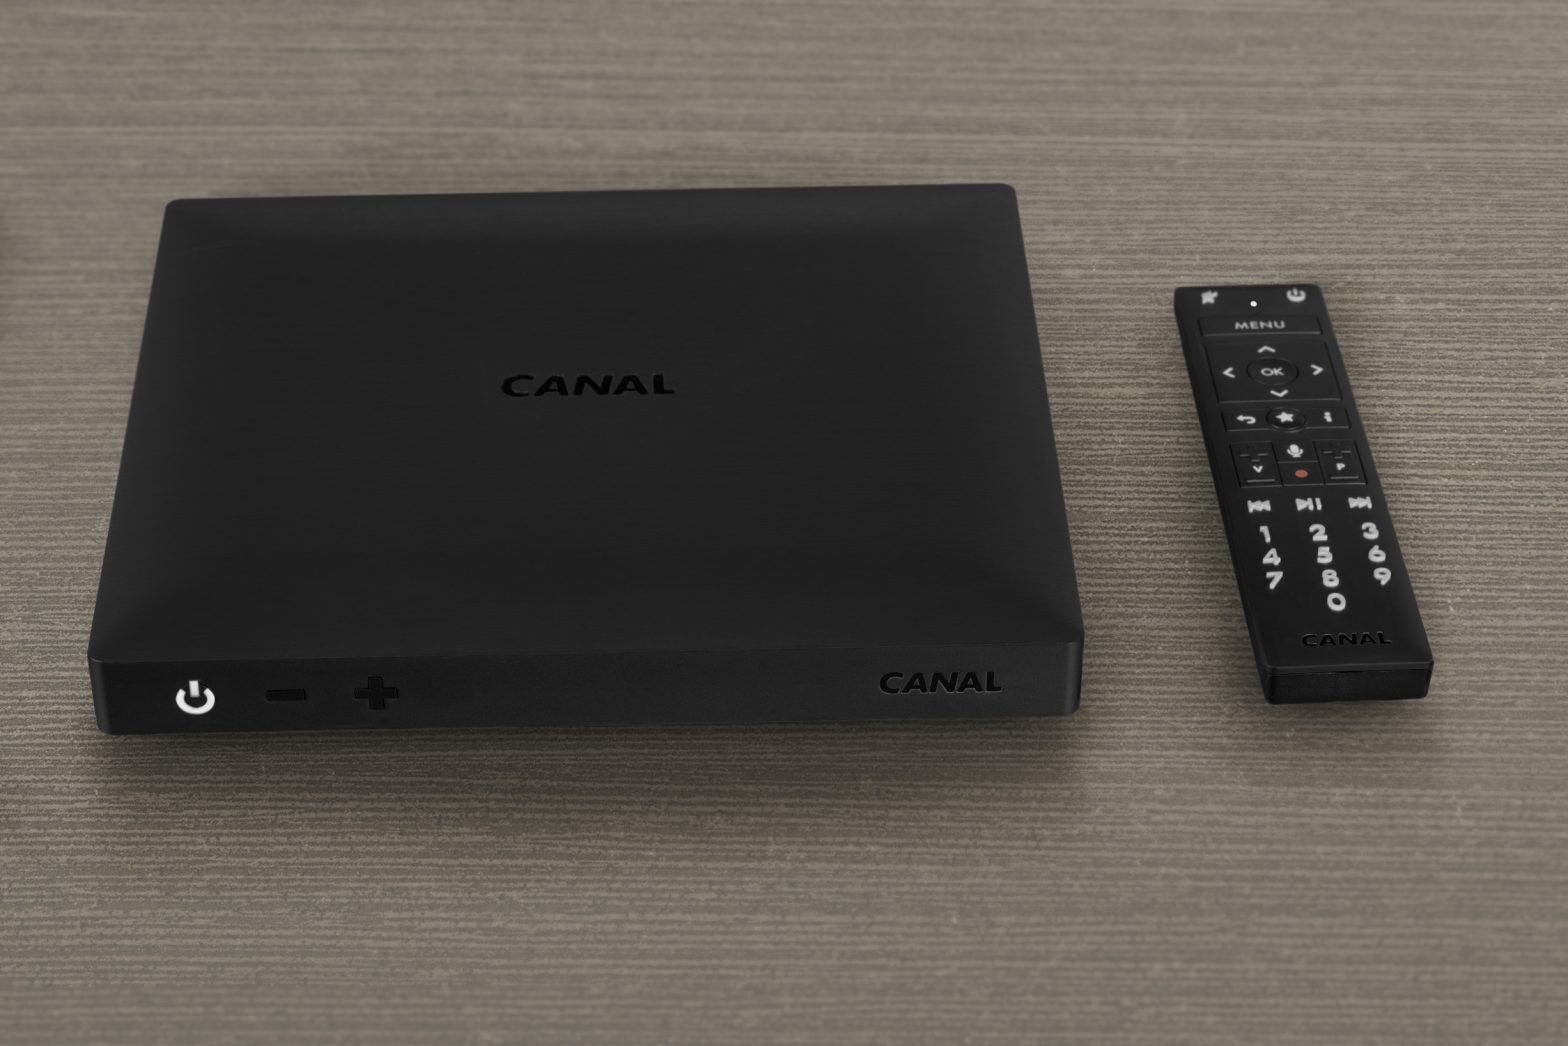 Le groupe Canal+ lance son nouveau décodeur configuré pour la 4K Ultra HD,  le Dolby Atmos et la commande vocale - The Media Leader FR